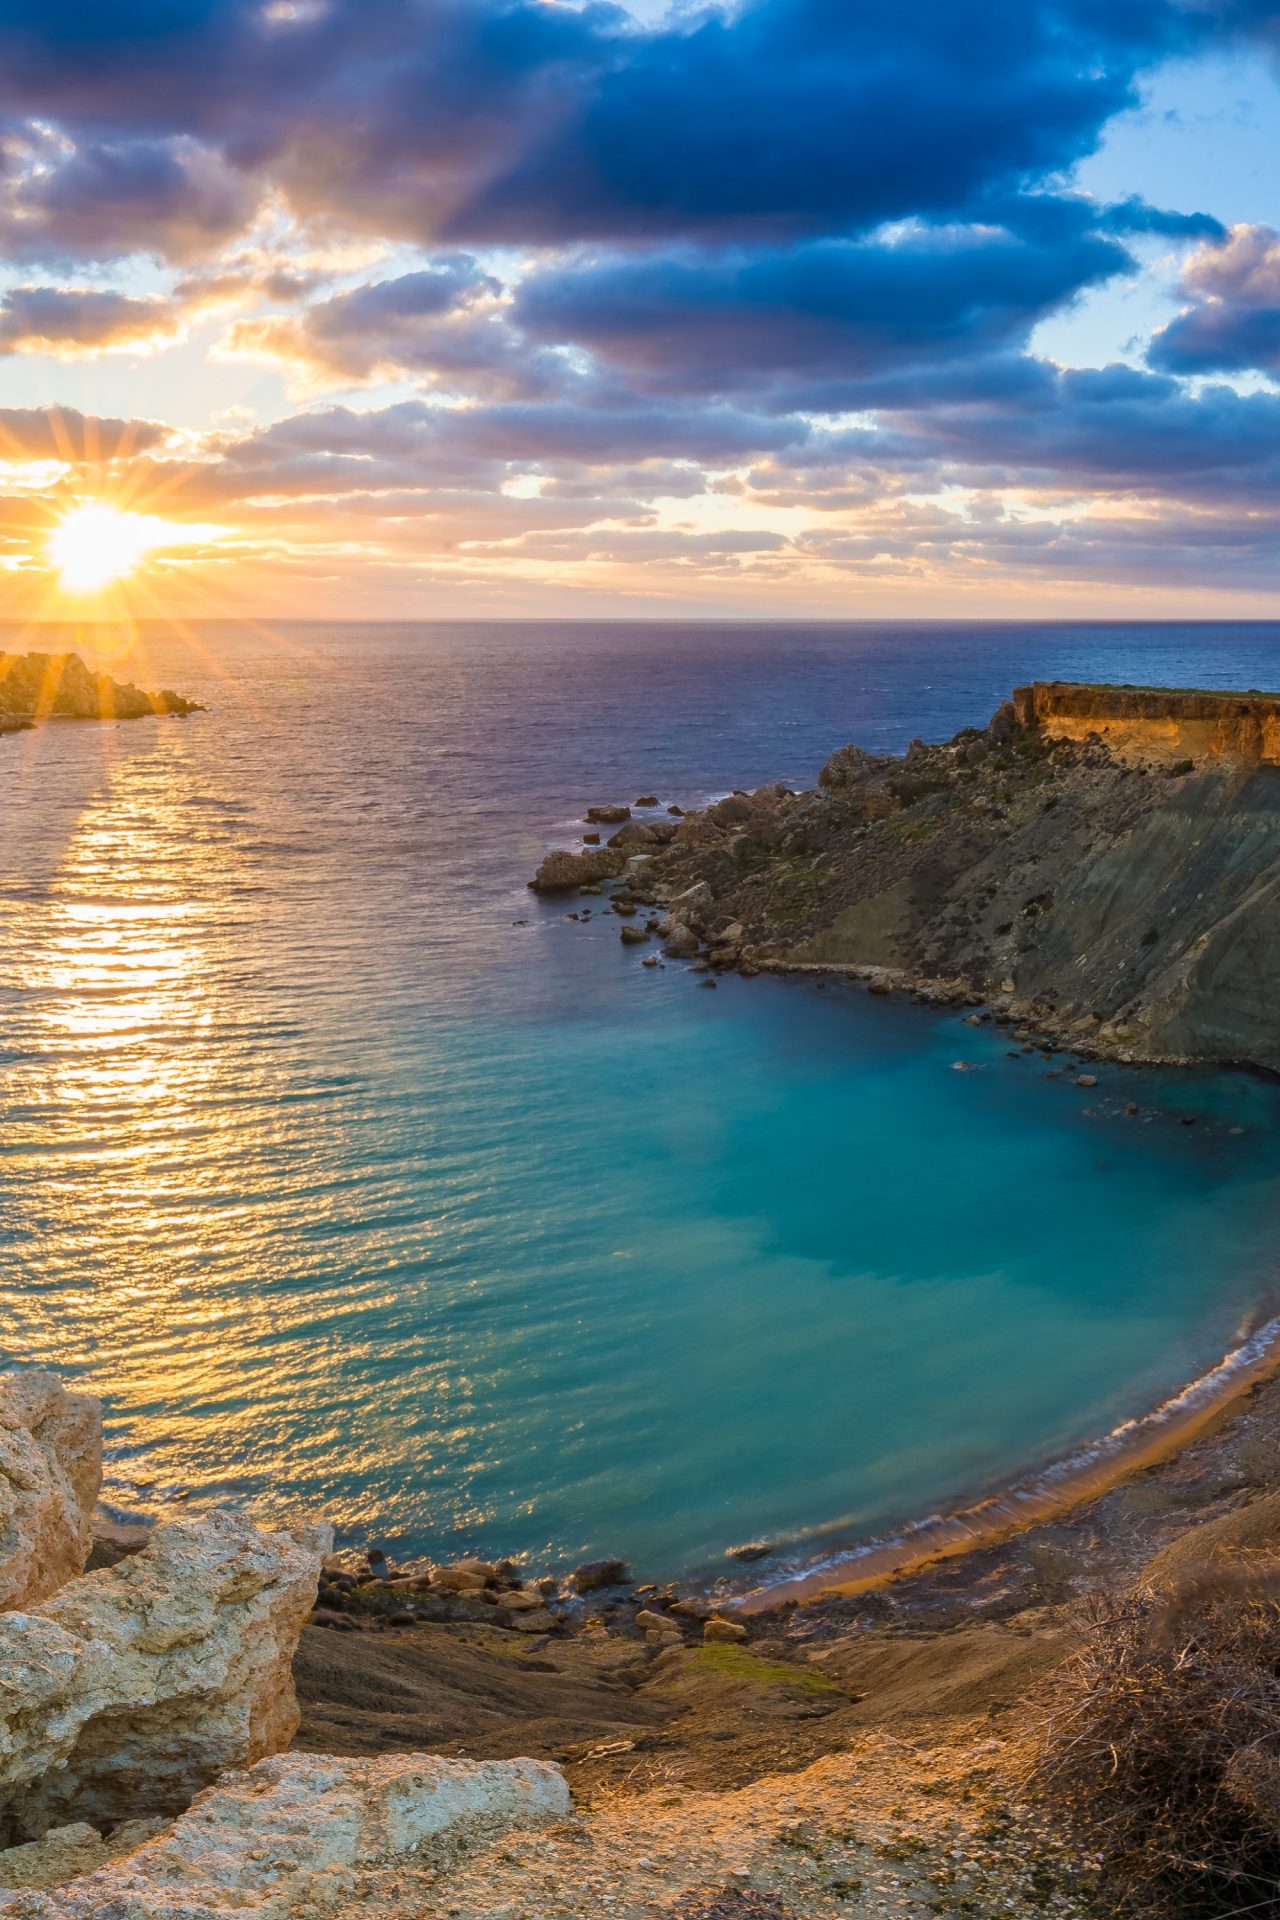 The coast of Malta at sunset